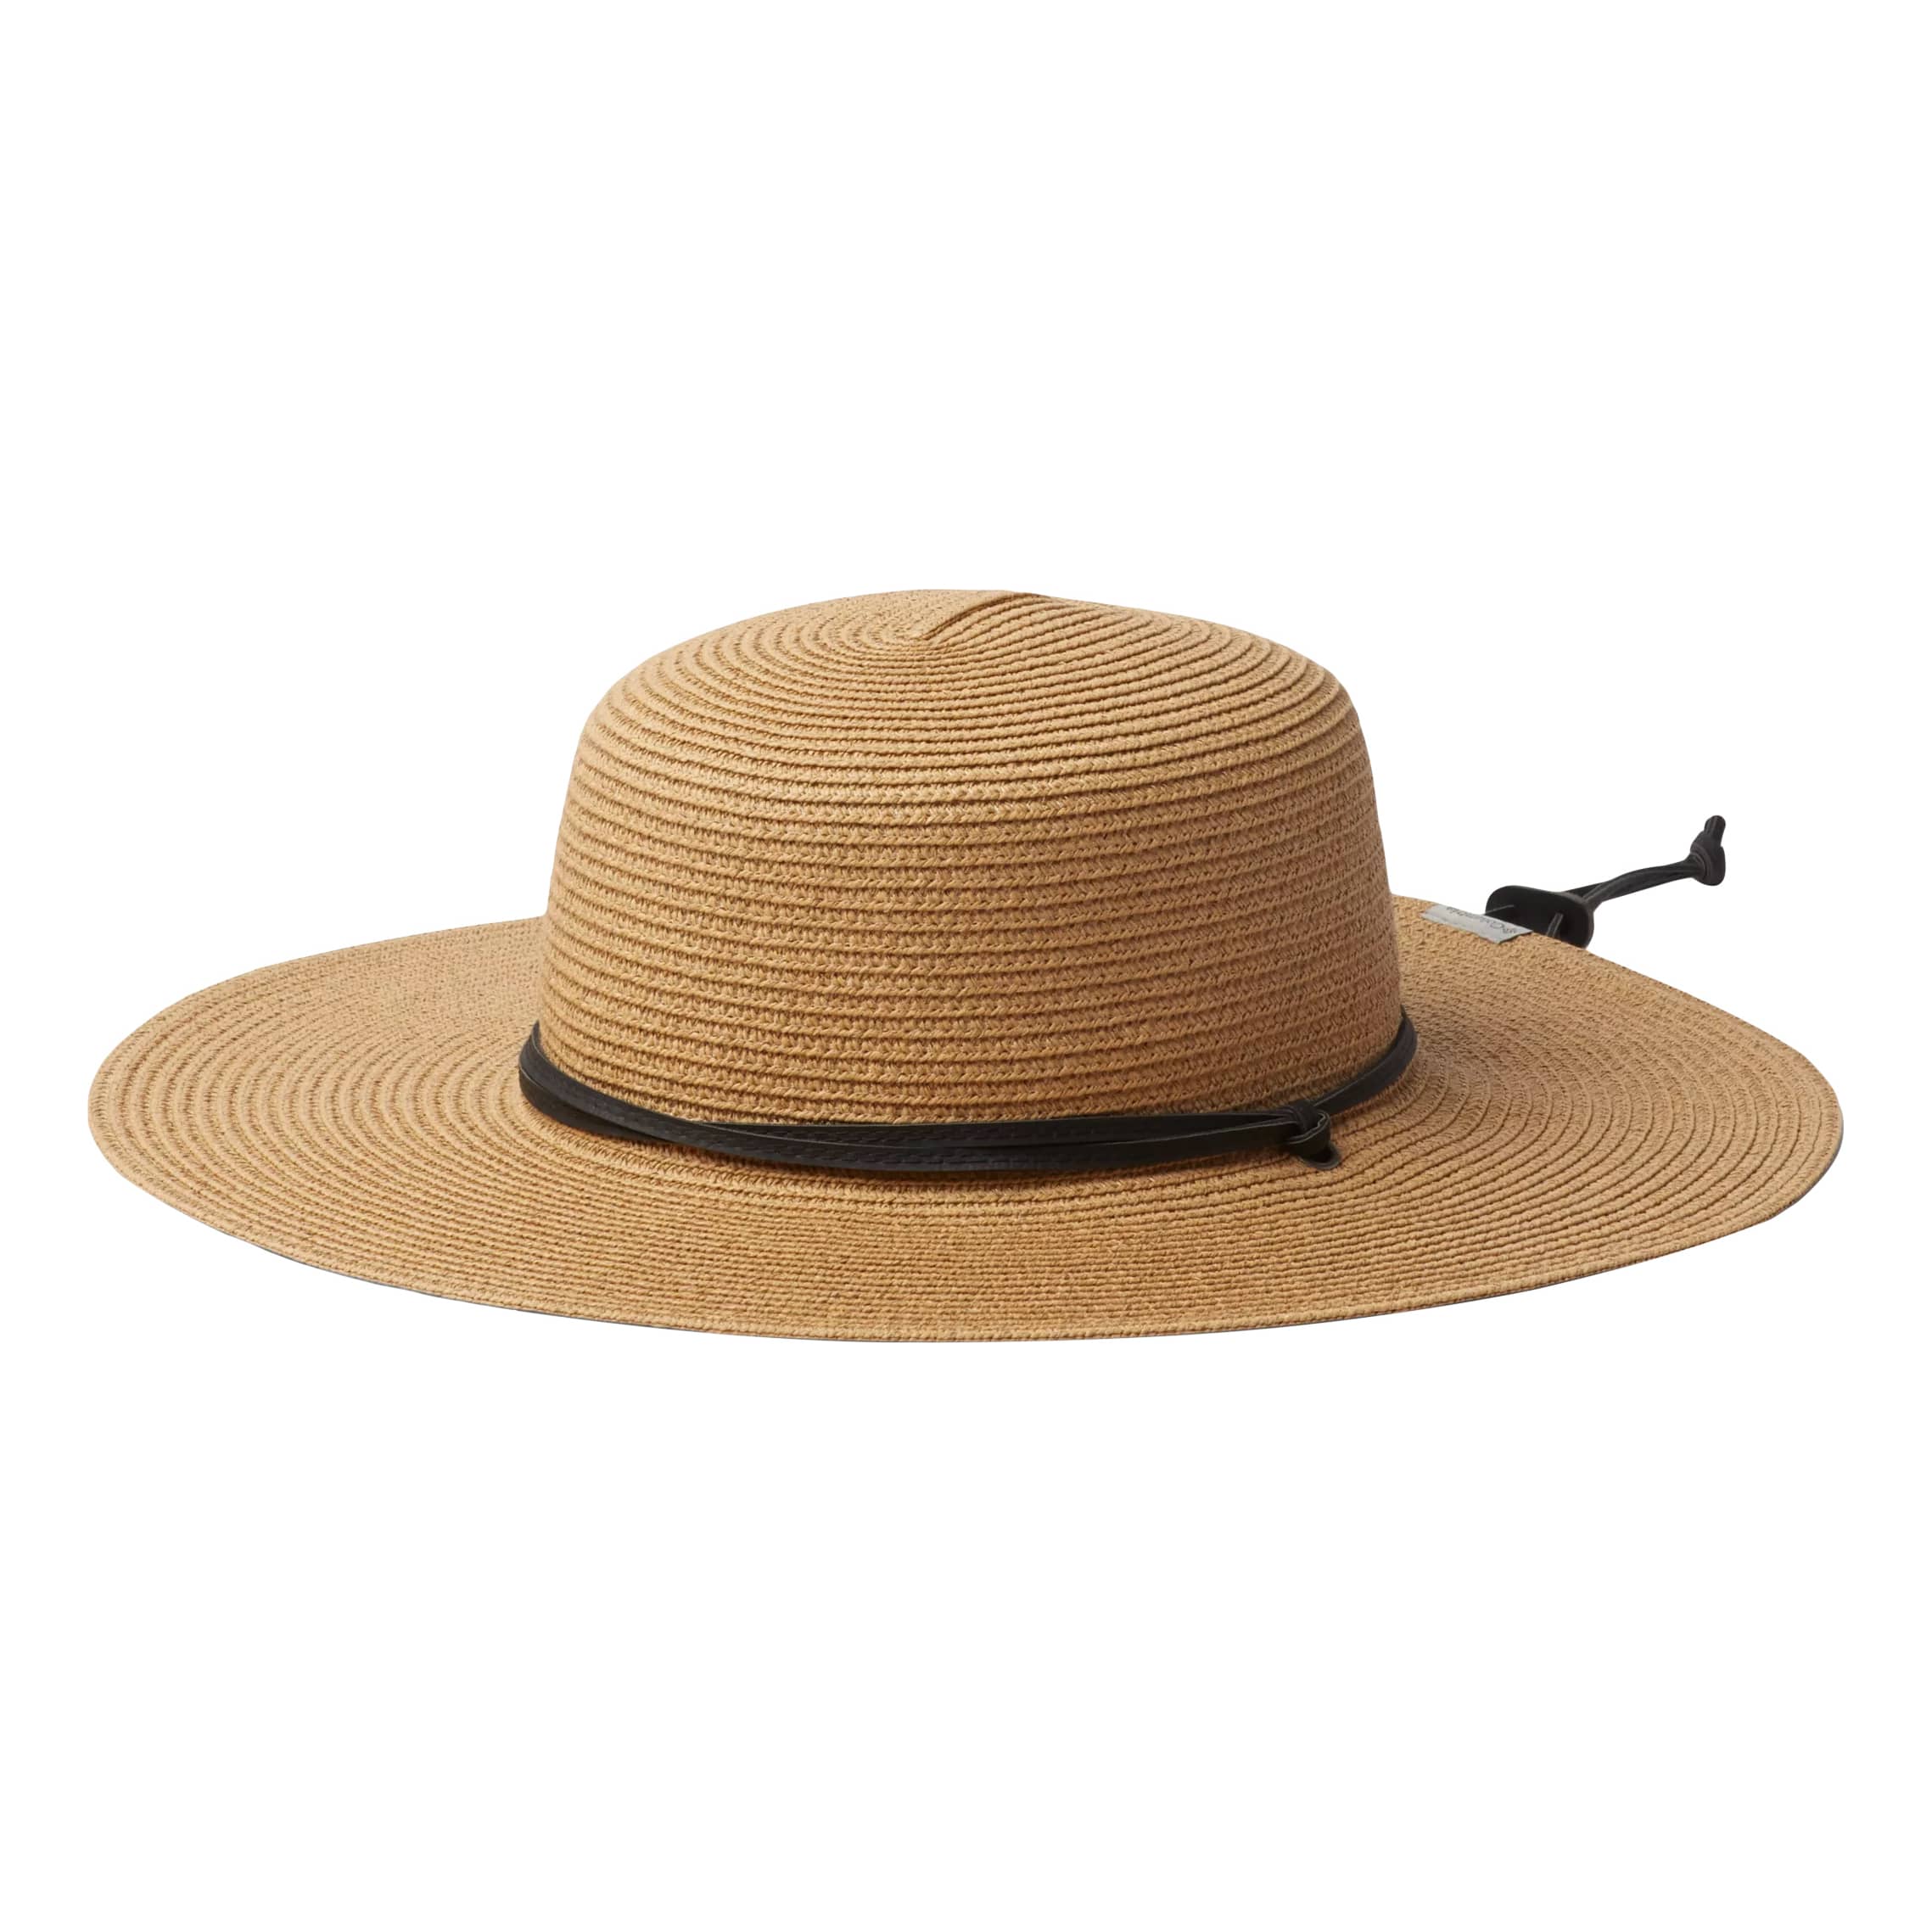 Columbia™ Women’s Global Adventure™ Packable Hat II - Straw